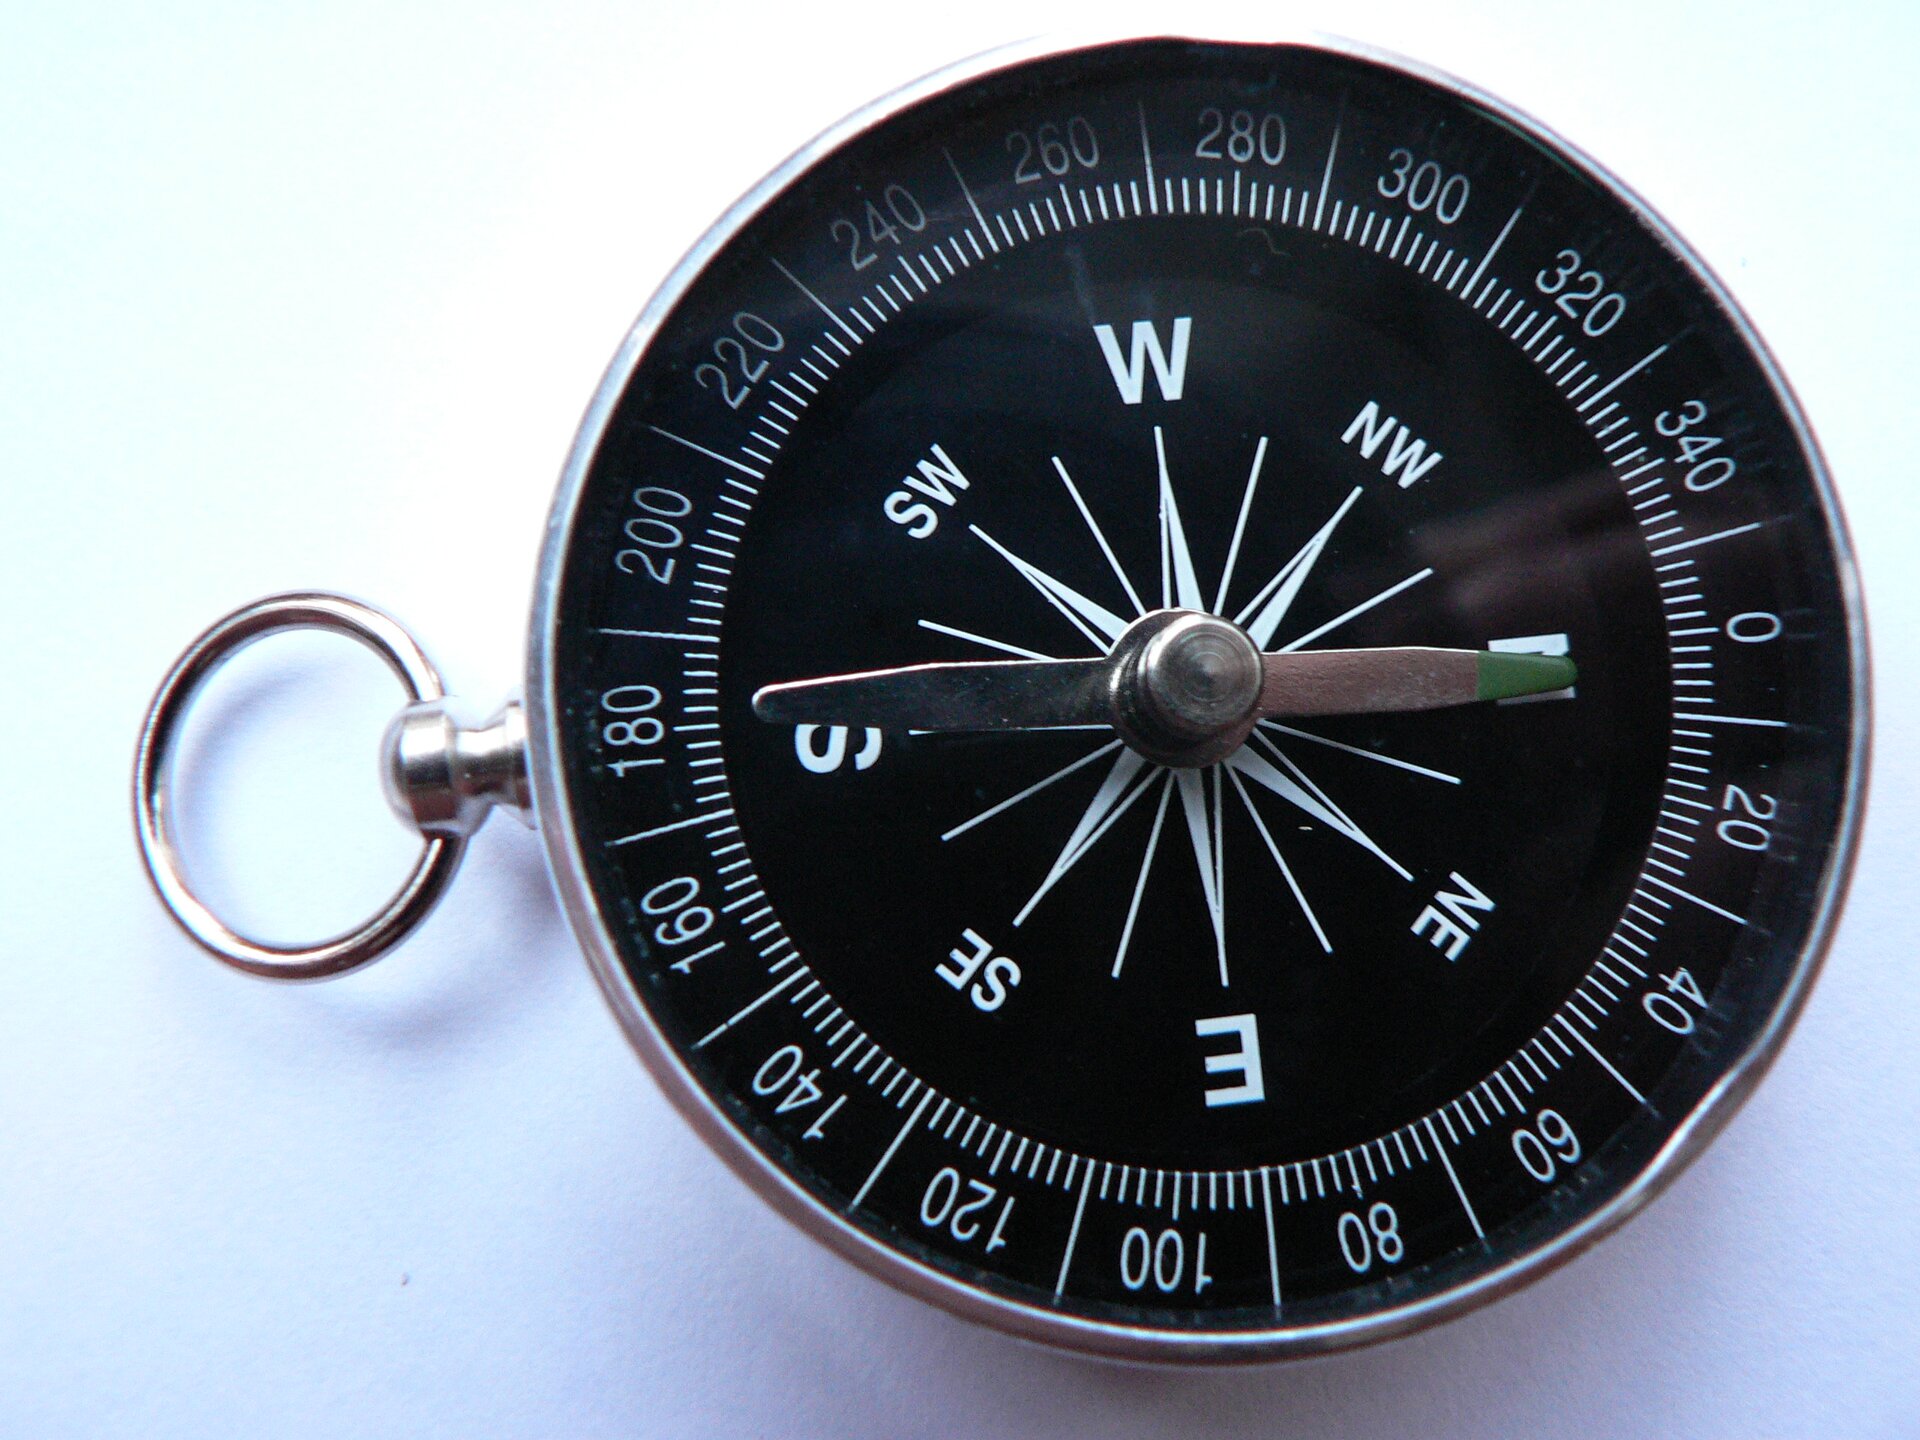 Zdjęcie przedstawiające okrągły, metalowy kompas z okrągłą zawieszką. Ma czarną tarczę z liczbami od 0 do 340 oraz litery oznaczające kierunki świata, a także dwie podłużne wskazówki.